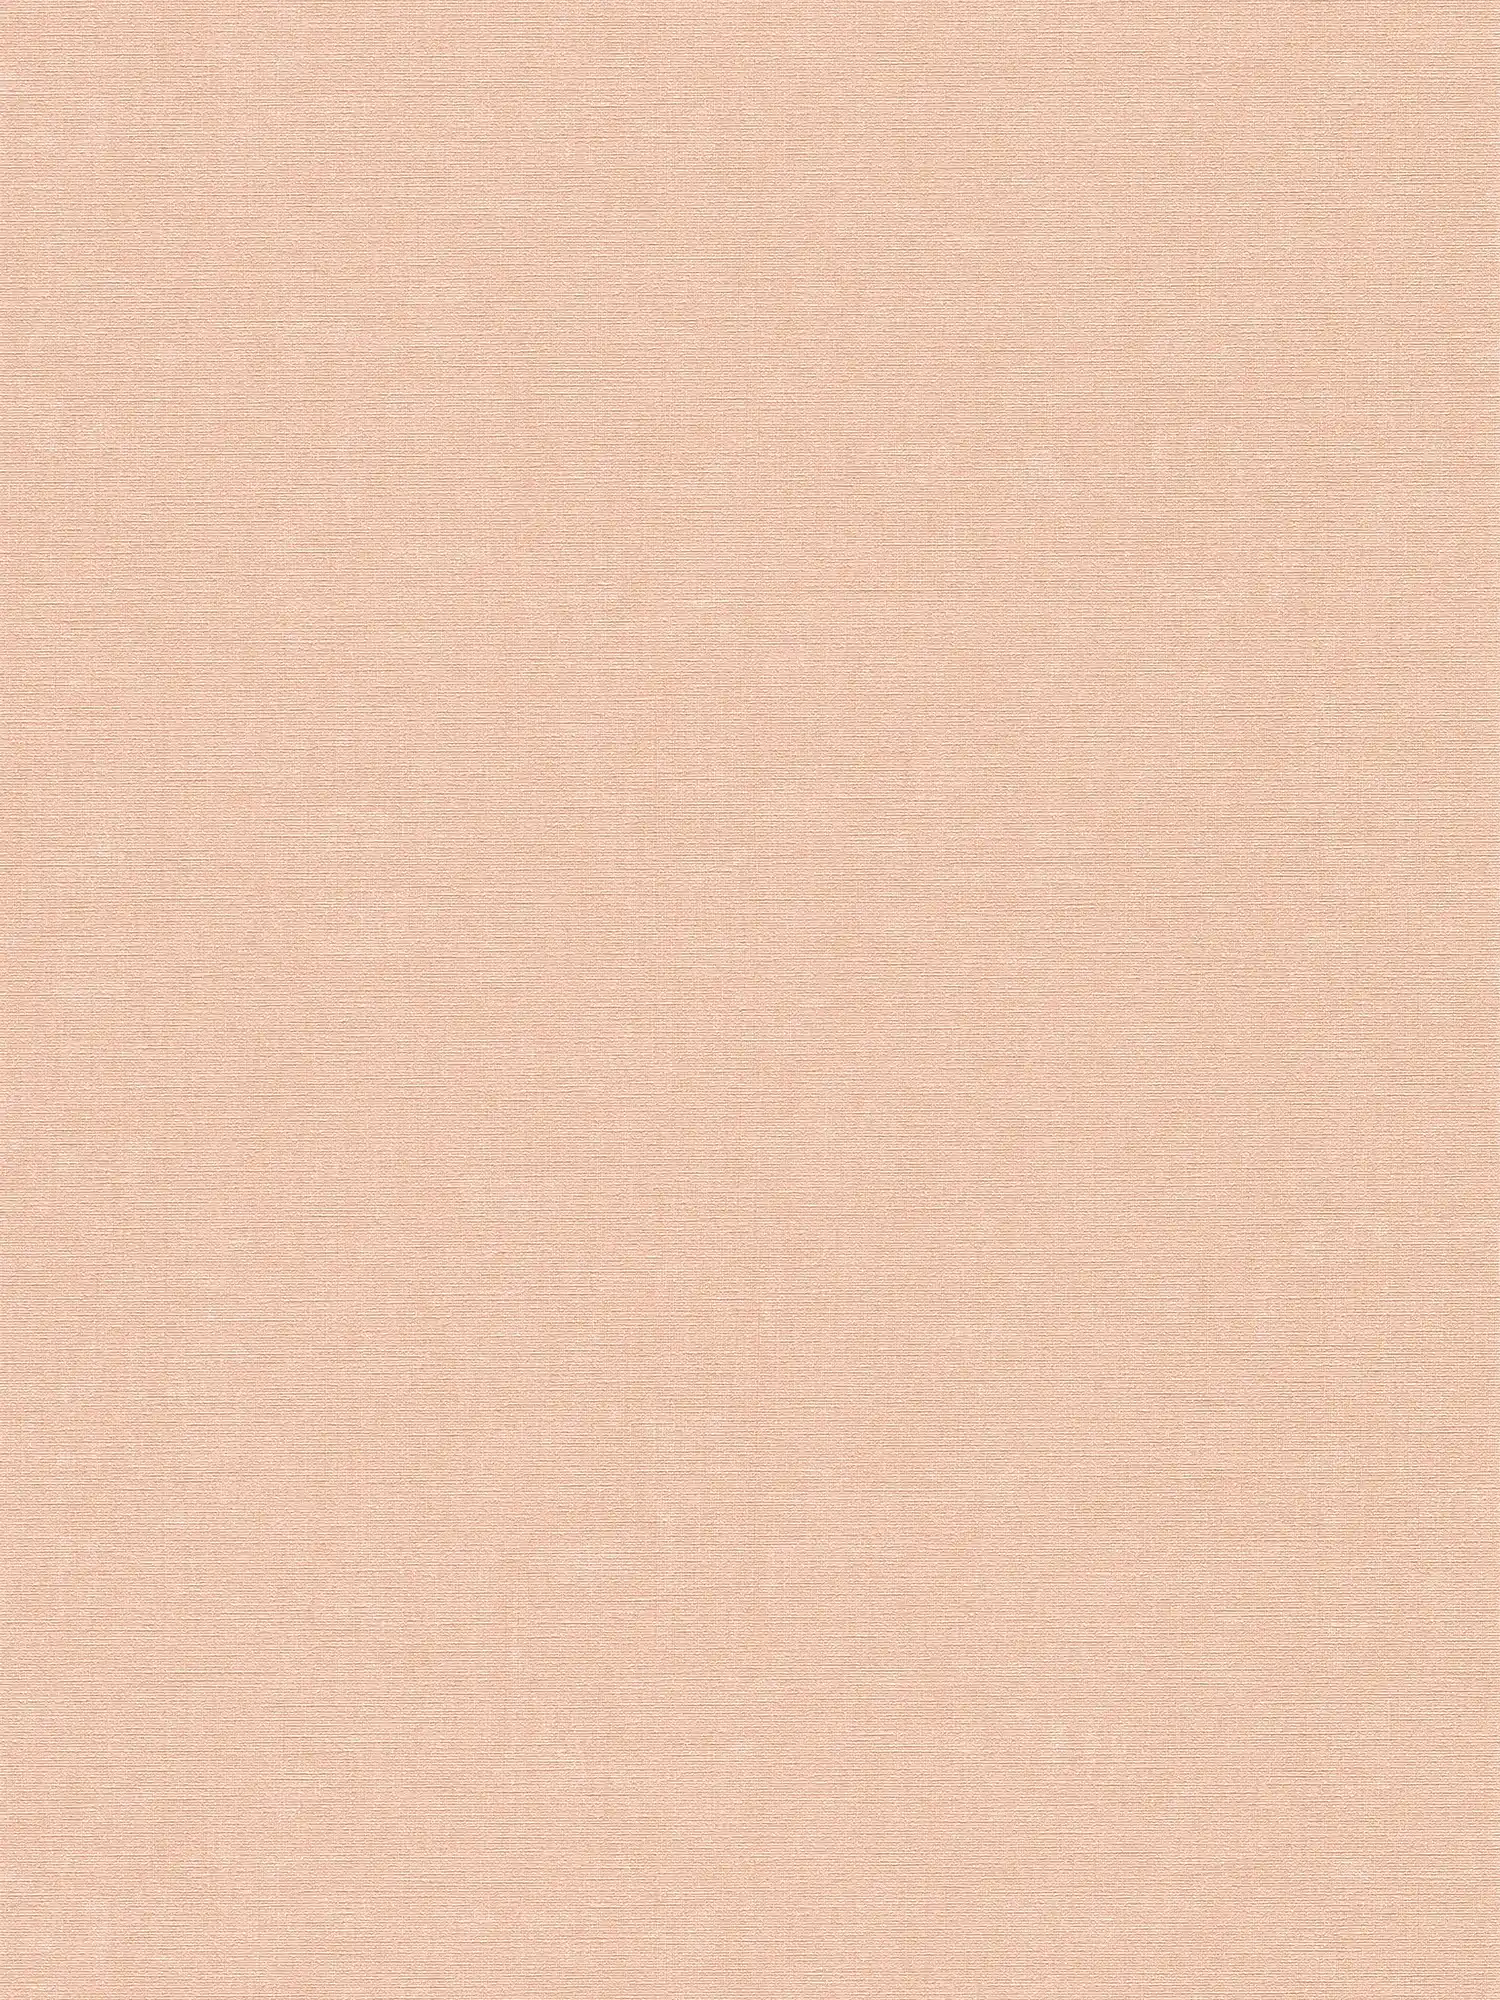 Carta da parati rosa liscia e screziata con struttura in rilievo
